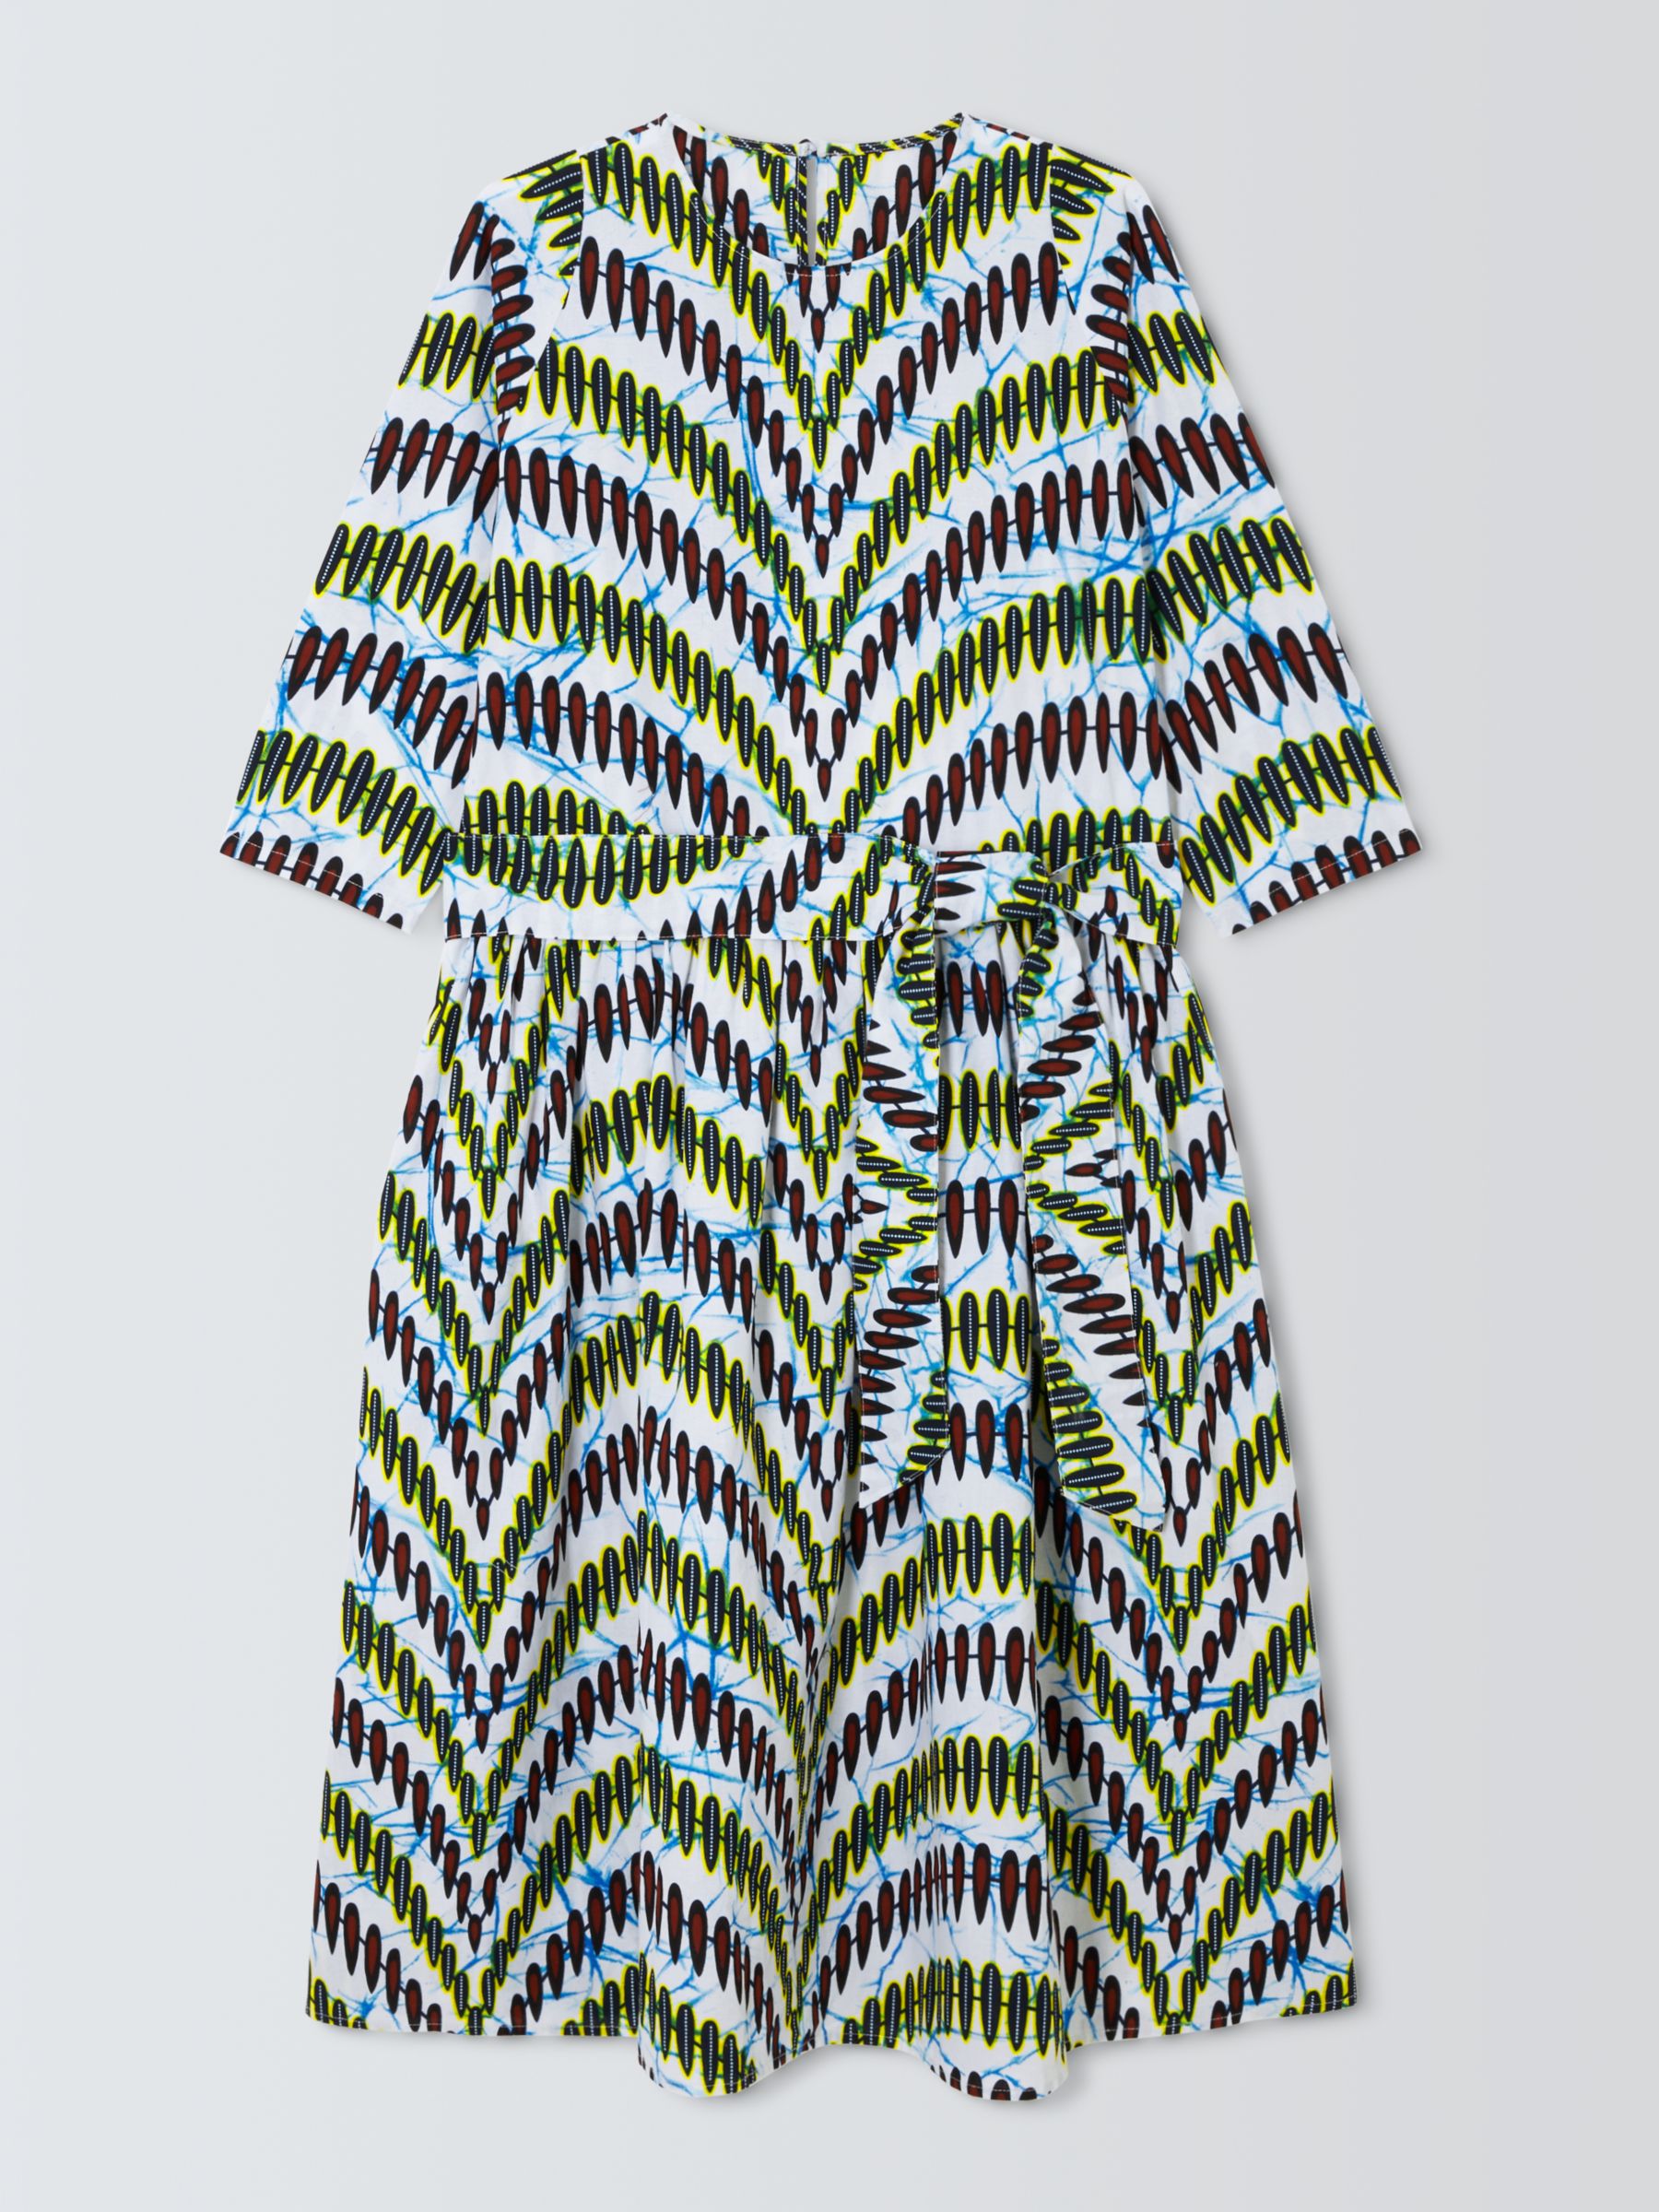 Kemi Telford Geometric Stripe Dress, Multi, L